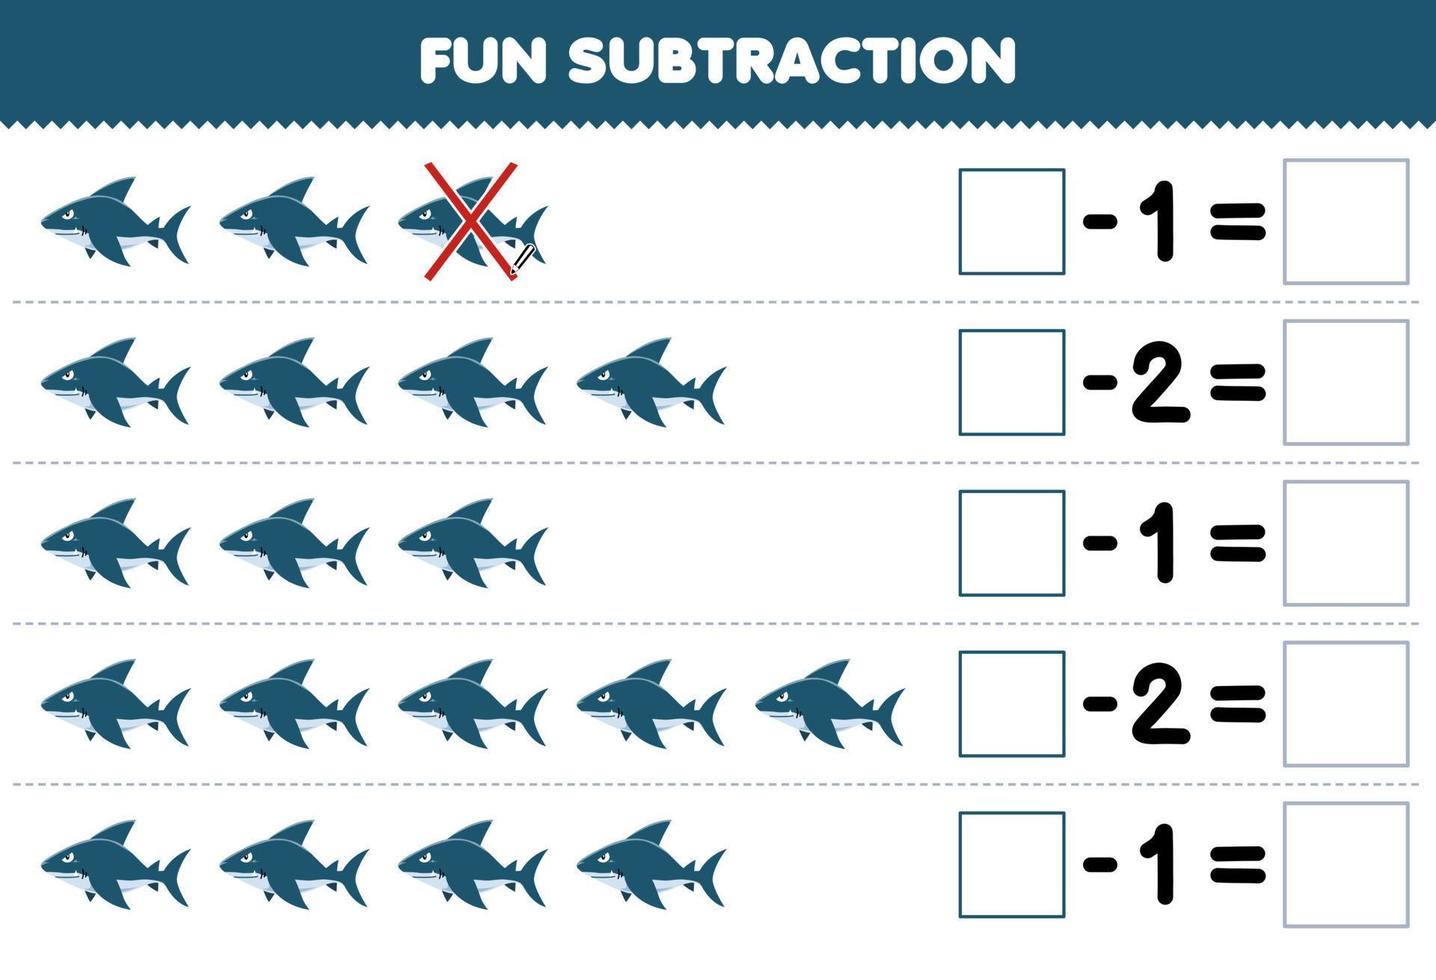 juego educativo para niños diversión resta contando lindo tiburón de dibujos animados en cada fila y eliminándolo hoja de trabajo subacuática imprimible vector